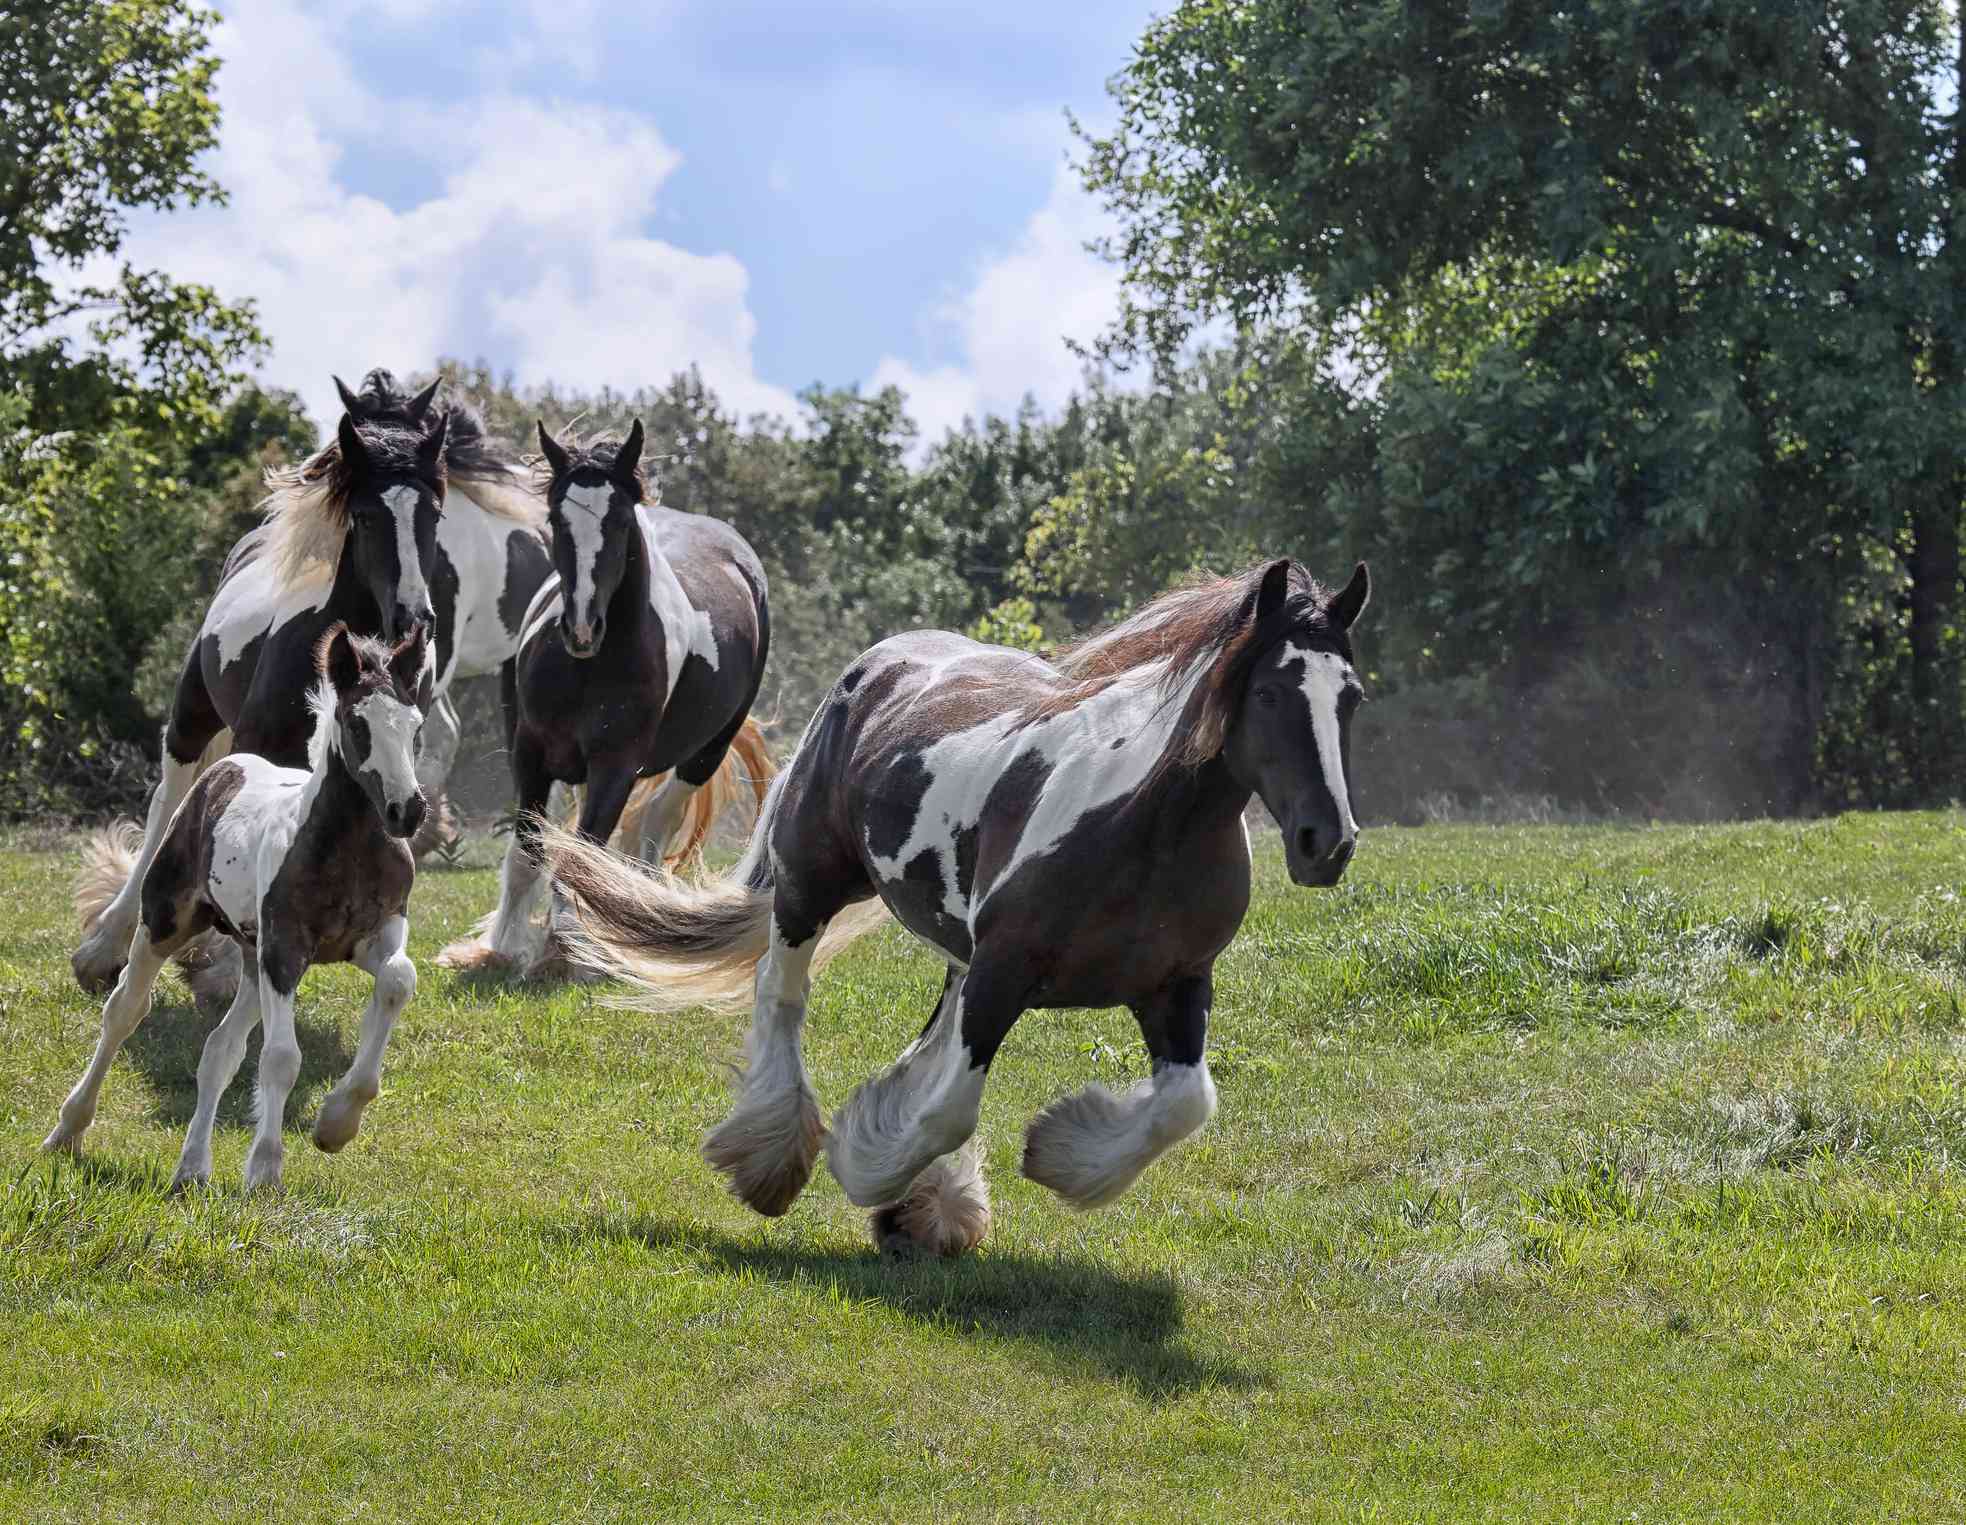 Una banda de caballos marrones y blancos corre desenfrenadamente por un campo cubierto de hierba